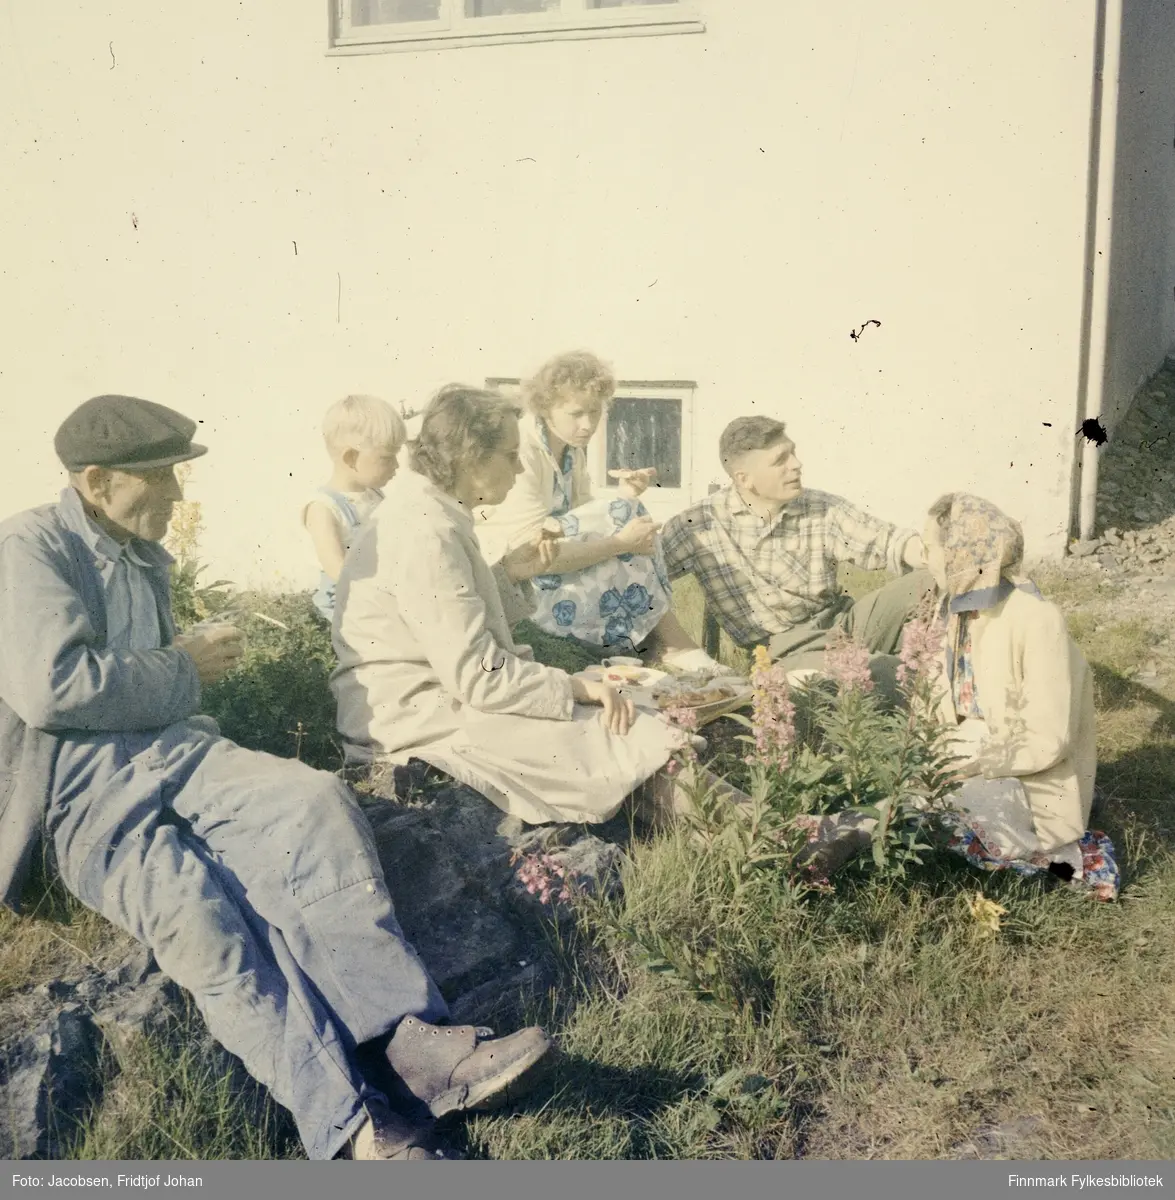 Seks personer samlet utenfor familien Nakkens hus i Rypefjord. De er fra venstre: Arne Nakken(far), ukjent gutt, Aase Randi Jacobsen(datter f. Nakken), Henriette Nakken(svigerdatter med kallenavn Dokka), Øystein Nakken(sønn), og Sigrid Nakken(mor).